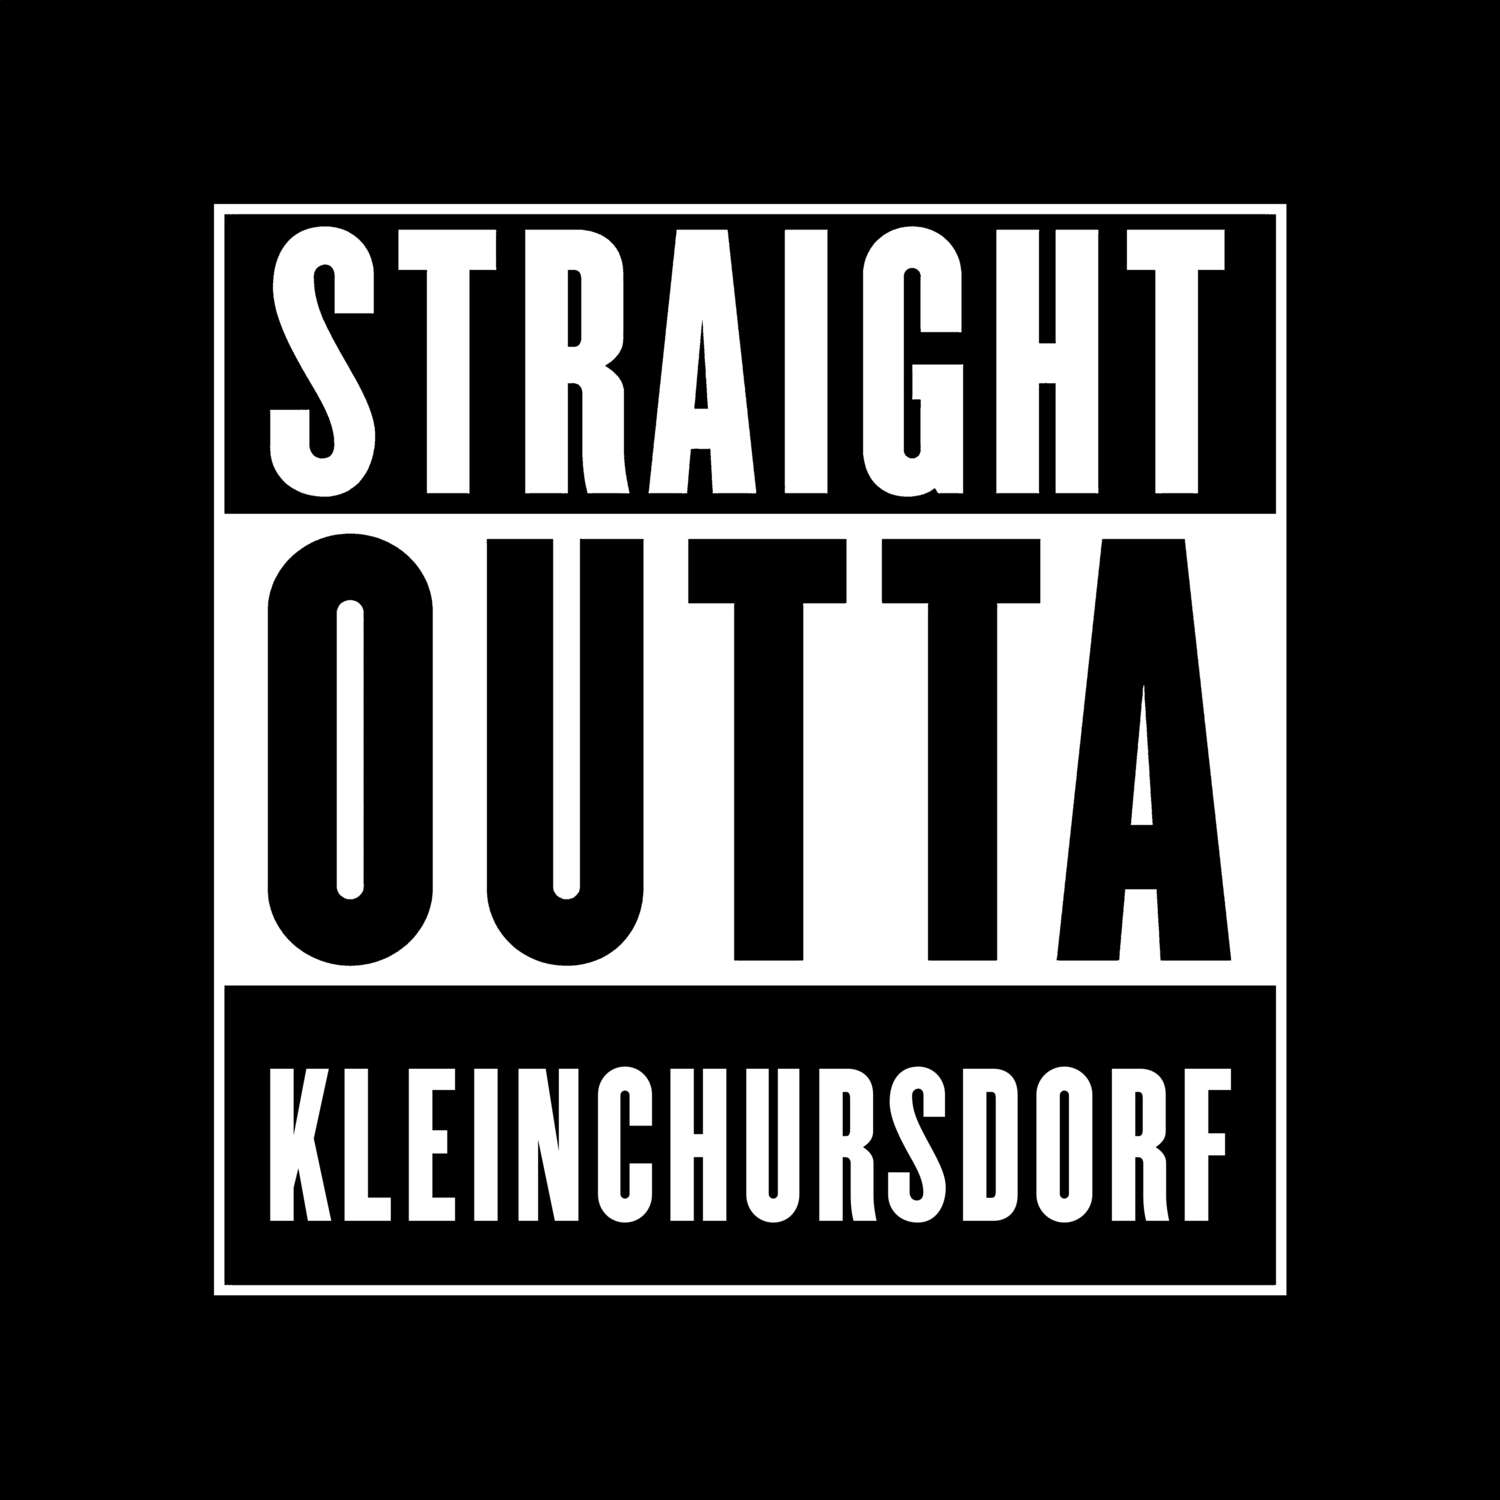 Kleinchursdorf T-Shirt »Straight Outta«